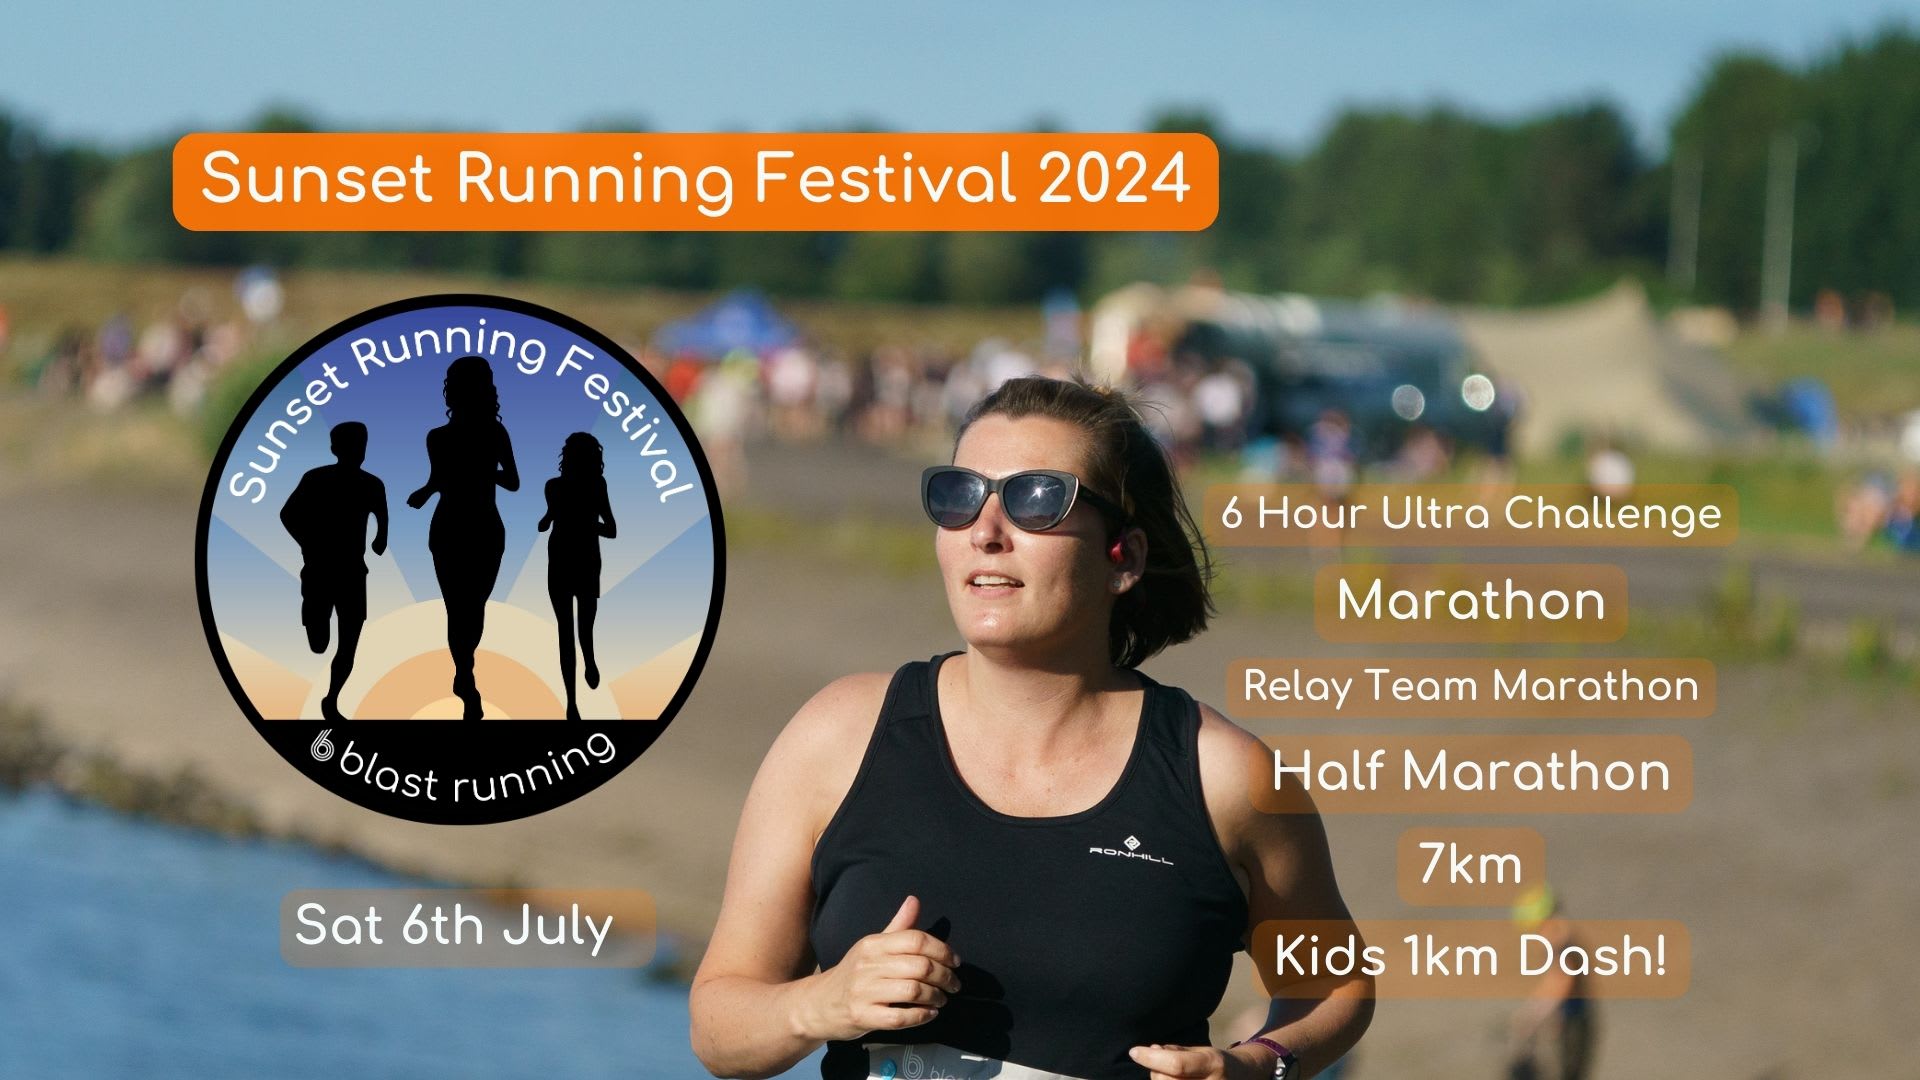 The Sunset Running Festival 2024